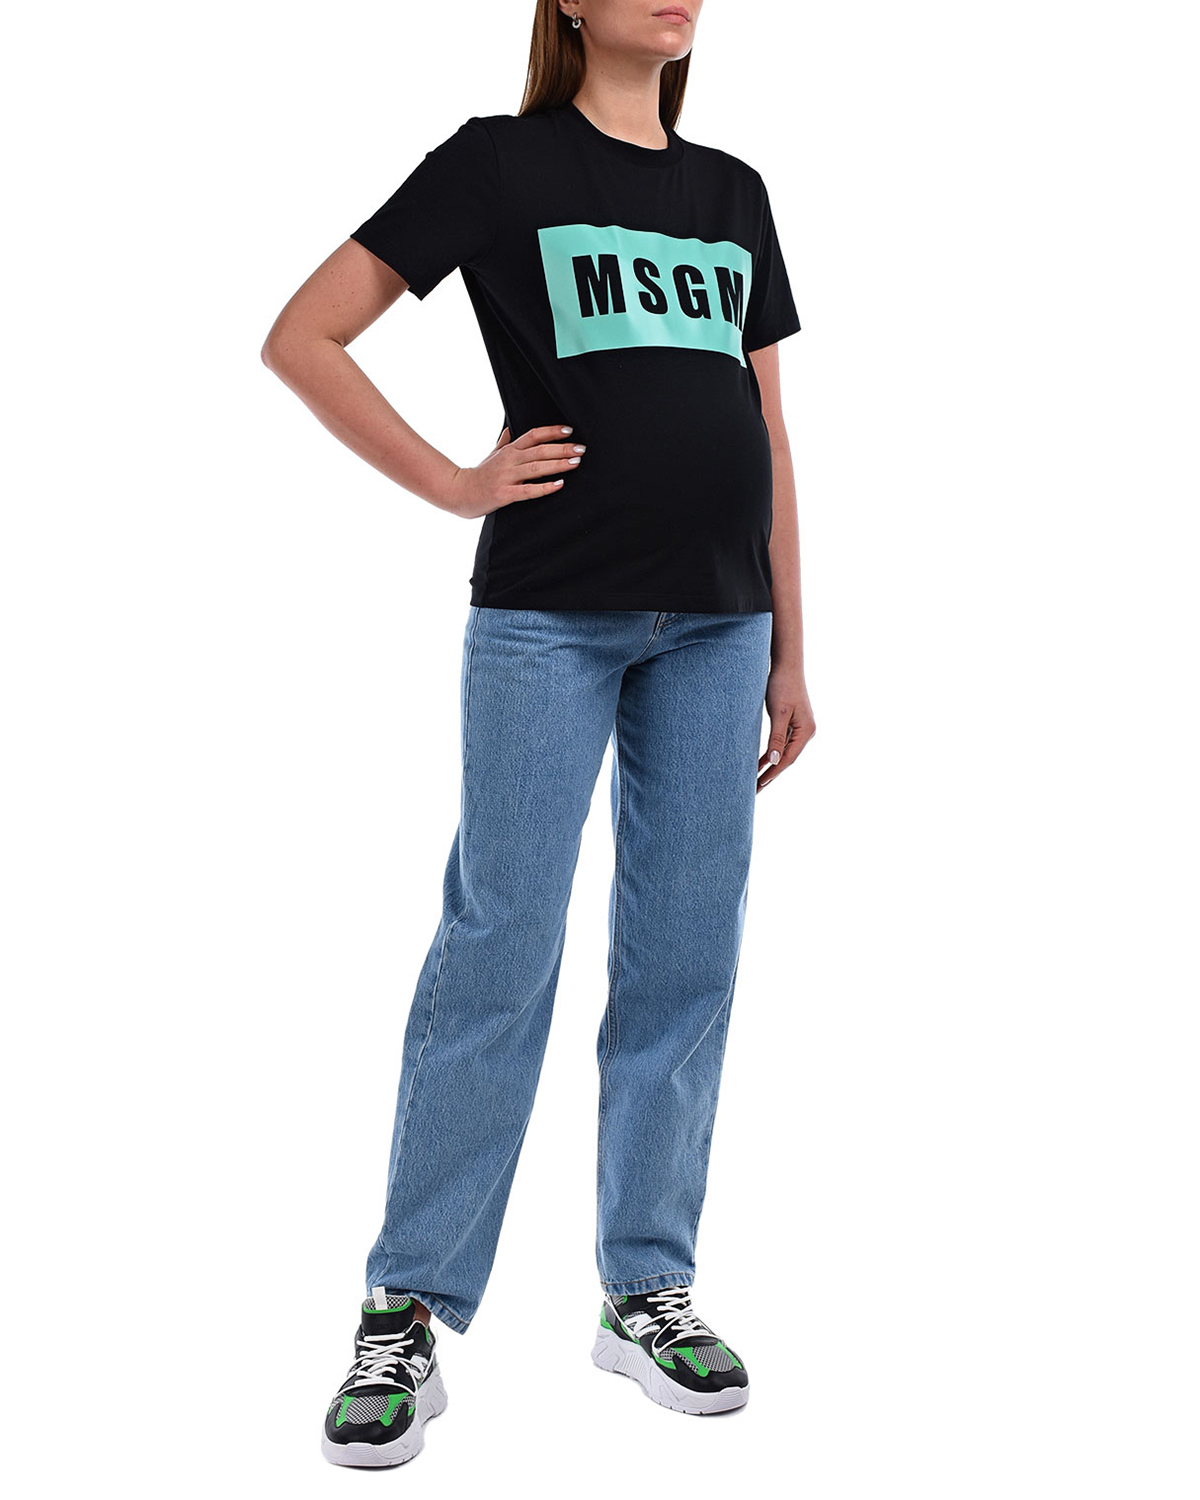 Черная футболка с прямоугольным принтом MSGM, размер 40, цвет черный - фото 5